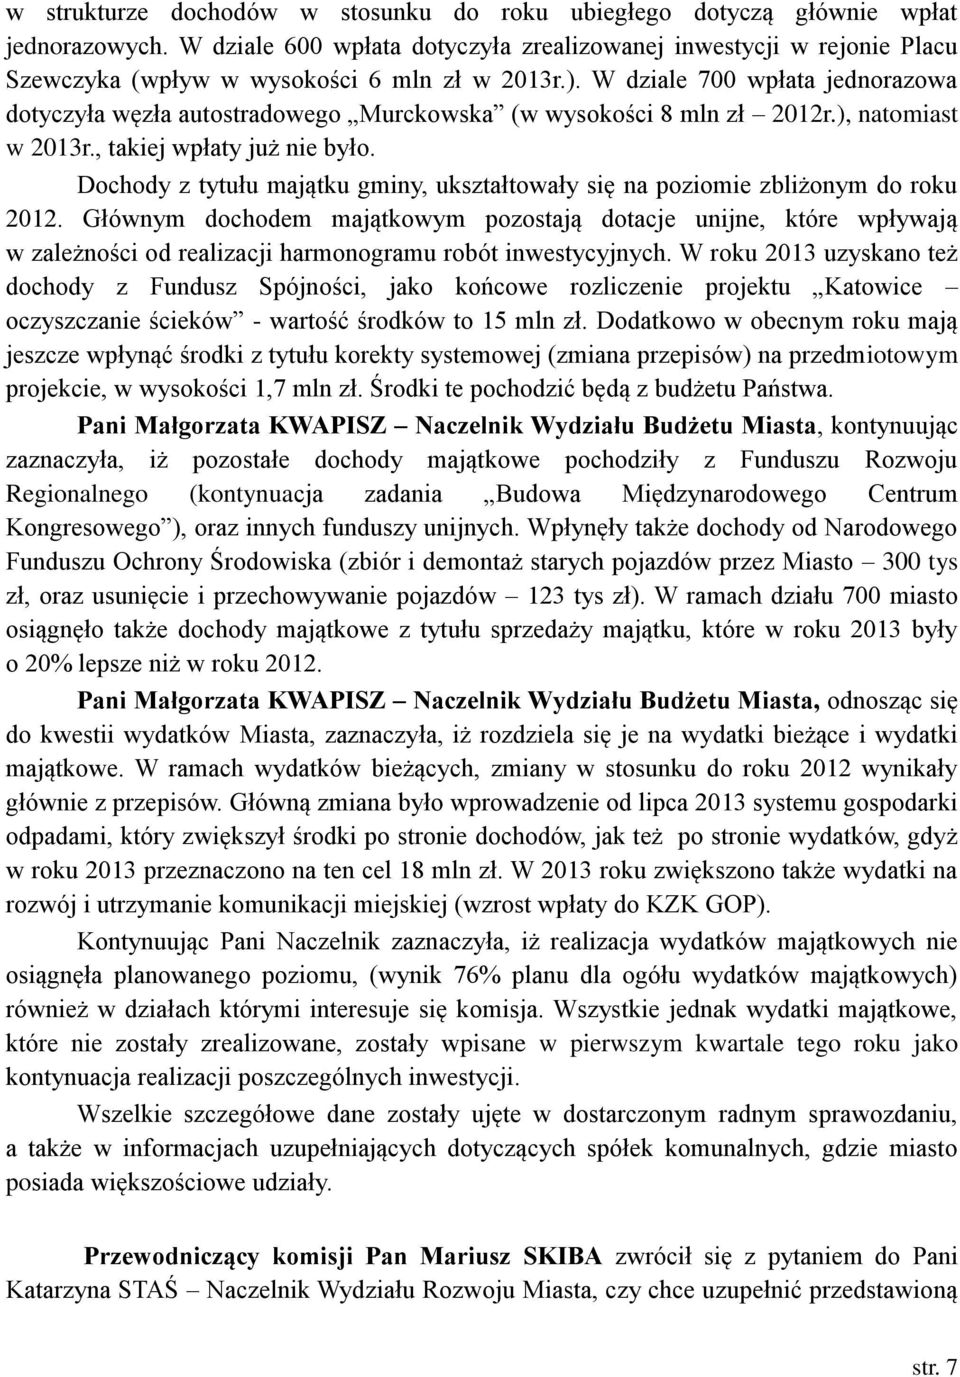 W dziale 700 wpłata jednorazowa dotyczyła węzła autostradowego Murckowska (w wysokości 8 mln zł 2012r.), natomiast w 2013r., takiej wpłaty już nie było.